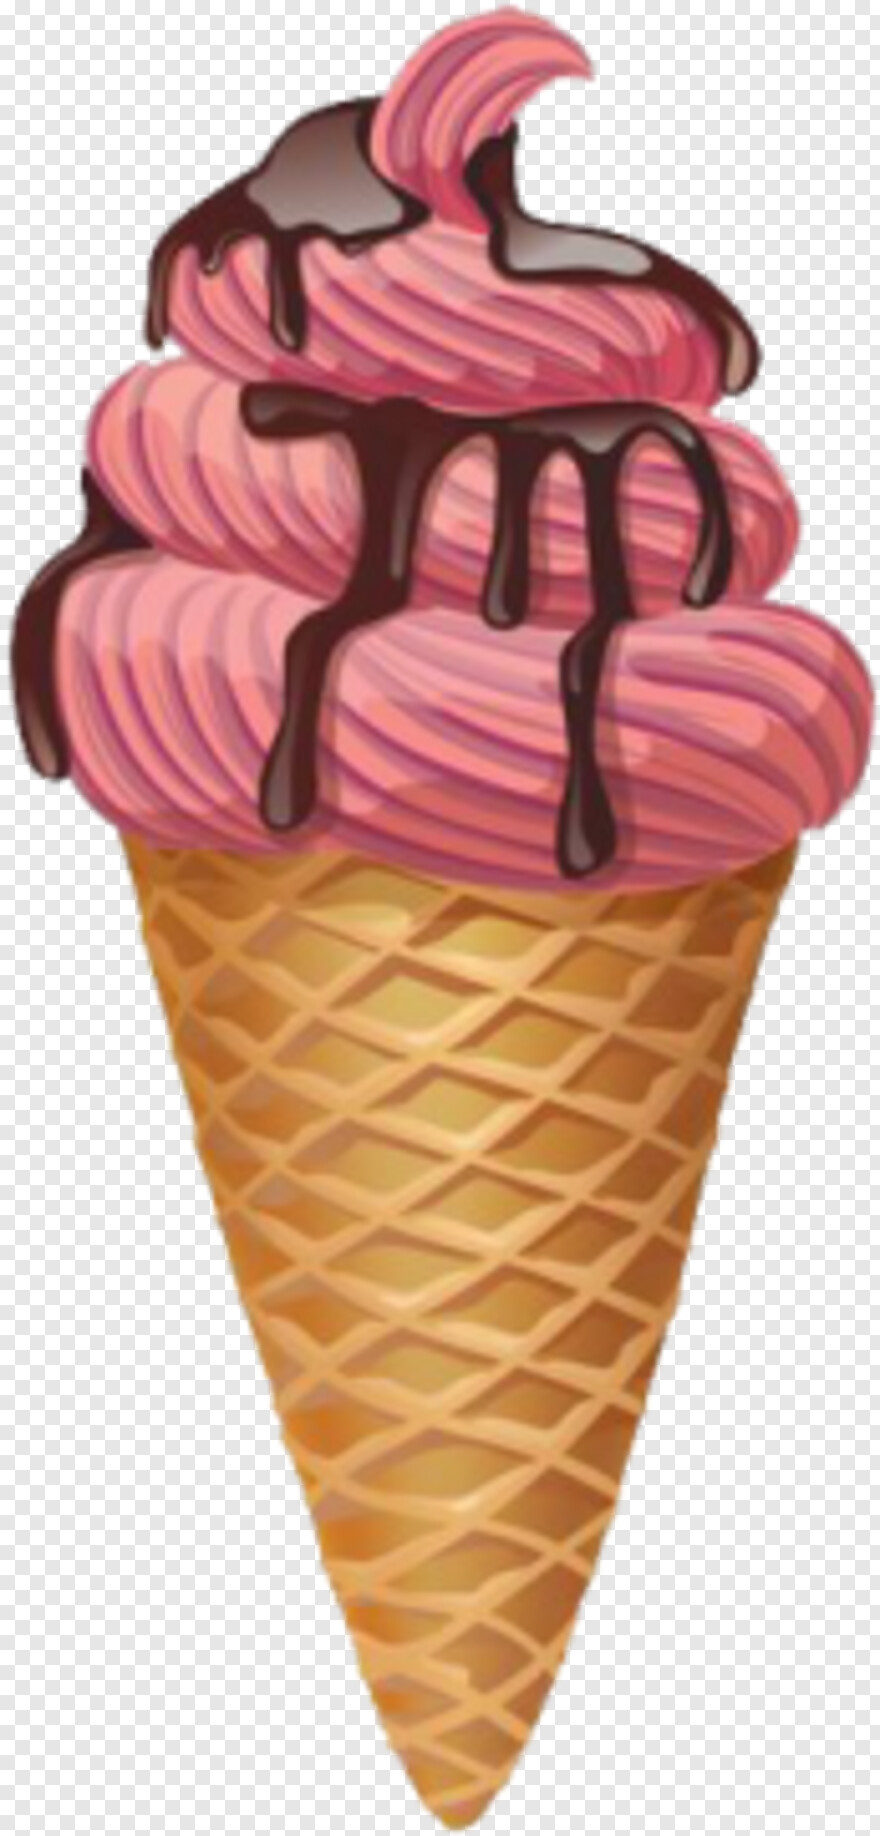 ice-cream-sundae # 966717